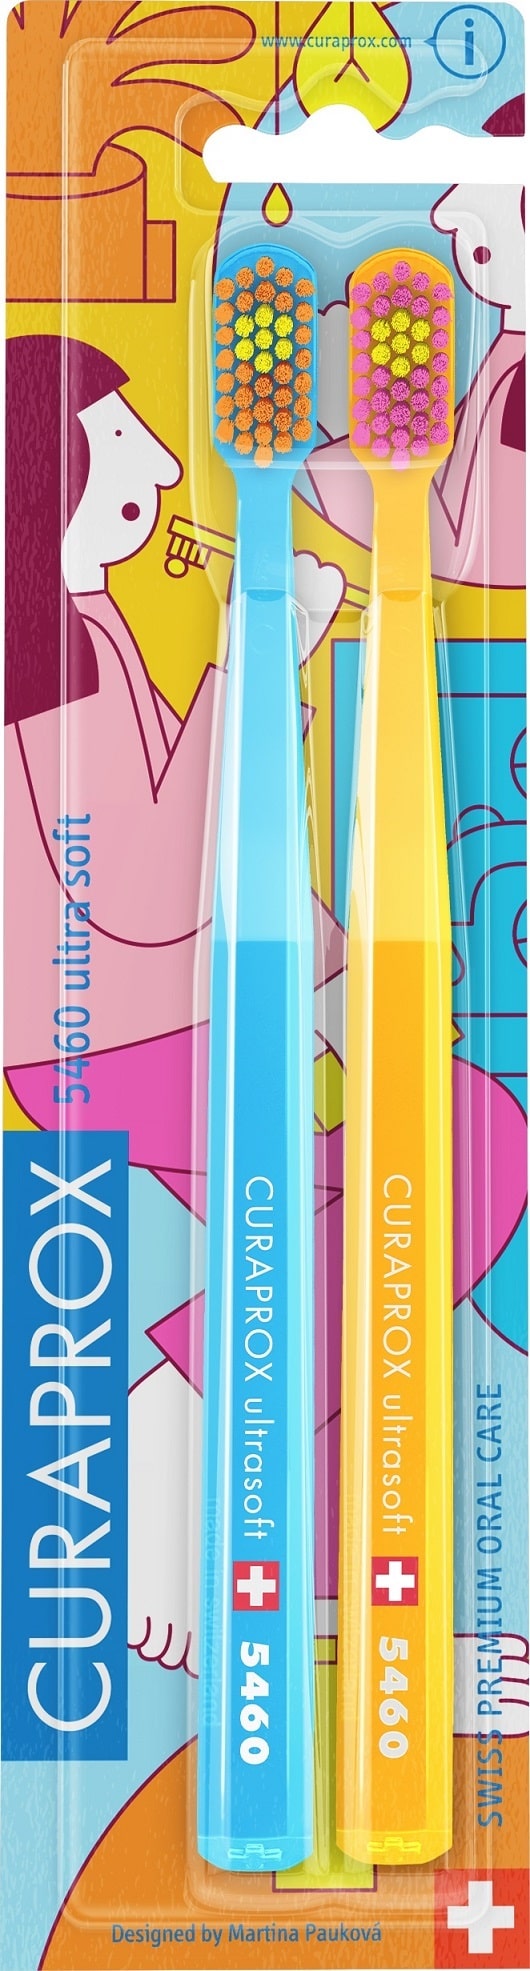 Купить Curaprox Набор зубных щеток CS Duo Bathroom Ultra Soft, 2 шт (Curaprox, Мануальные зубные щетки), Швейцария